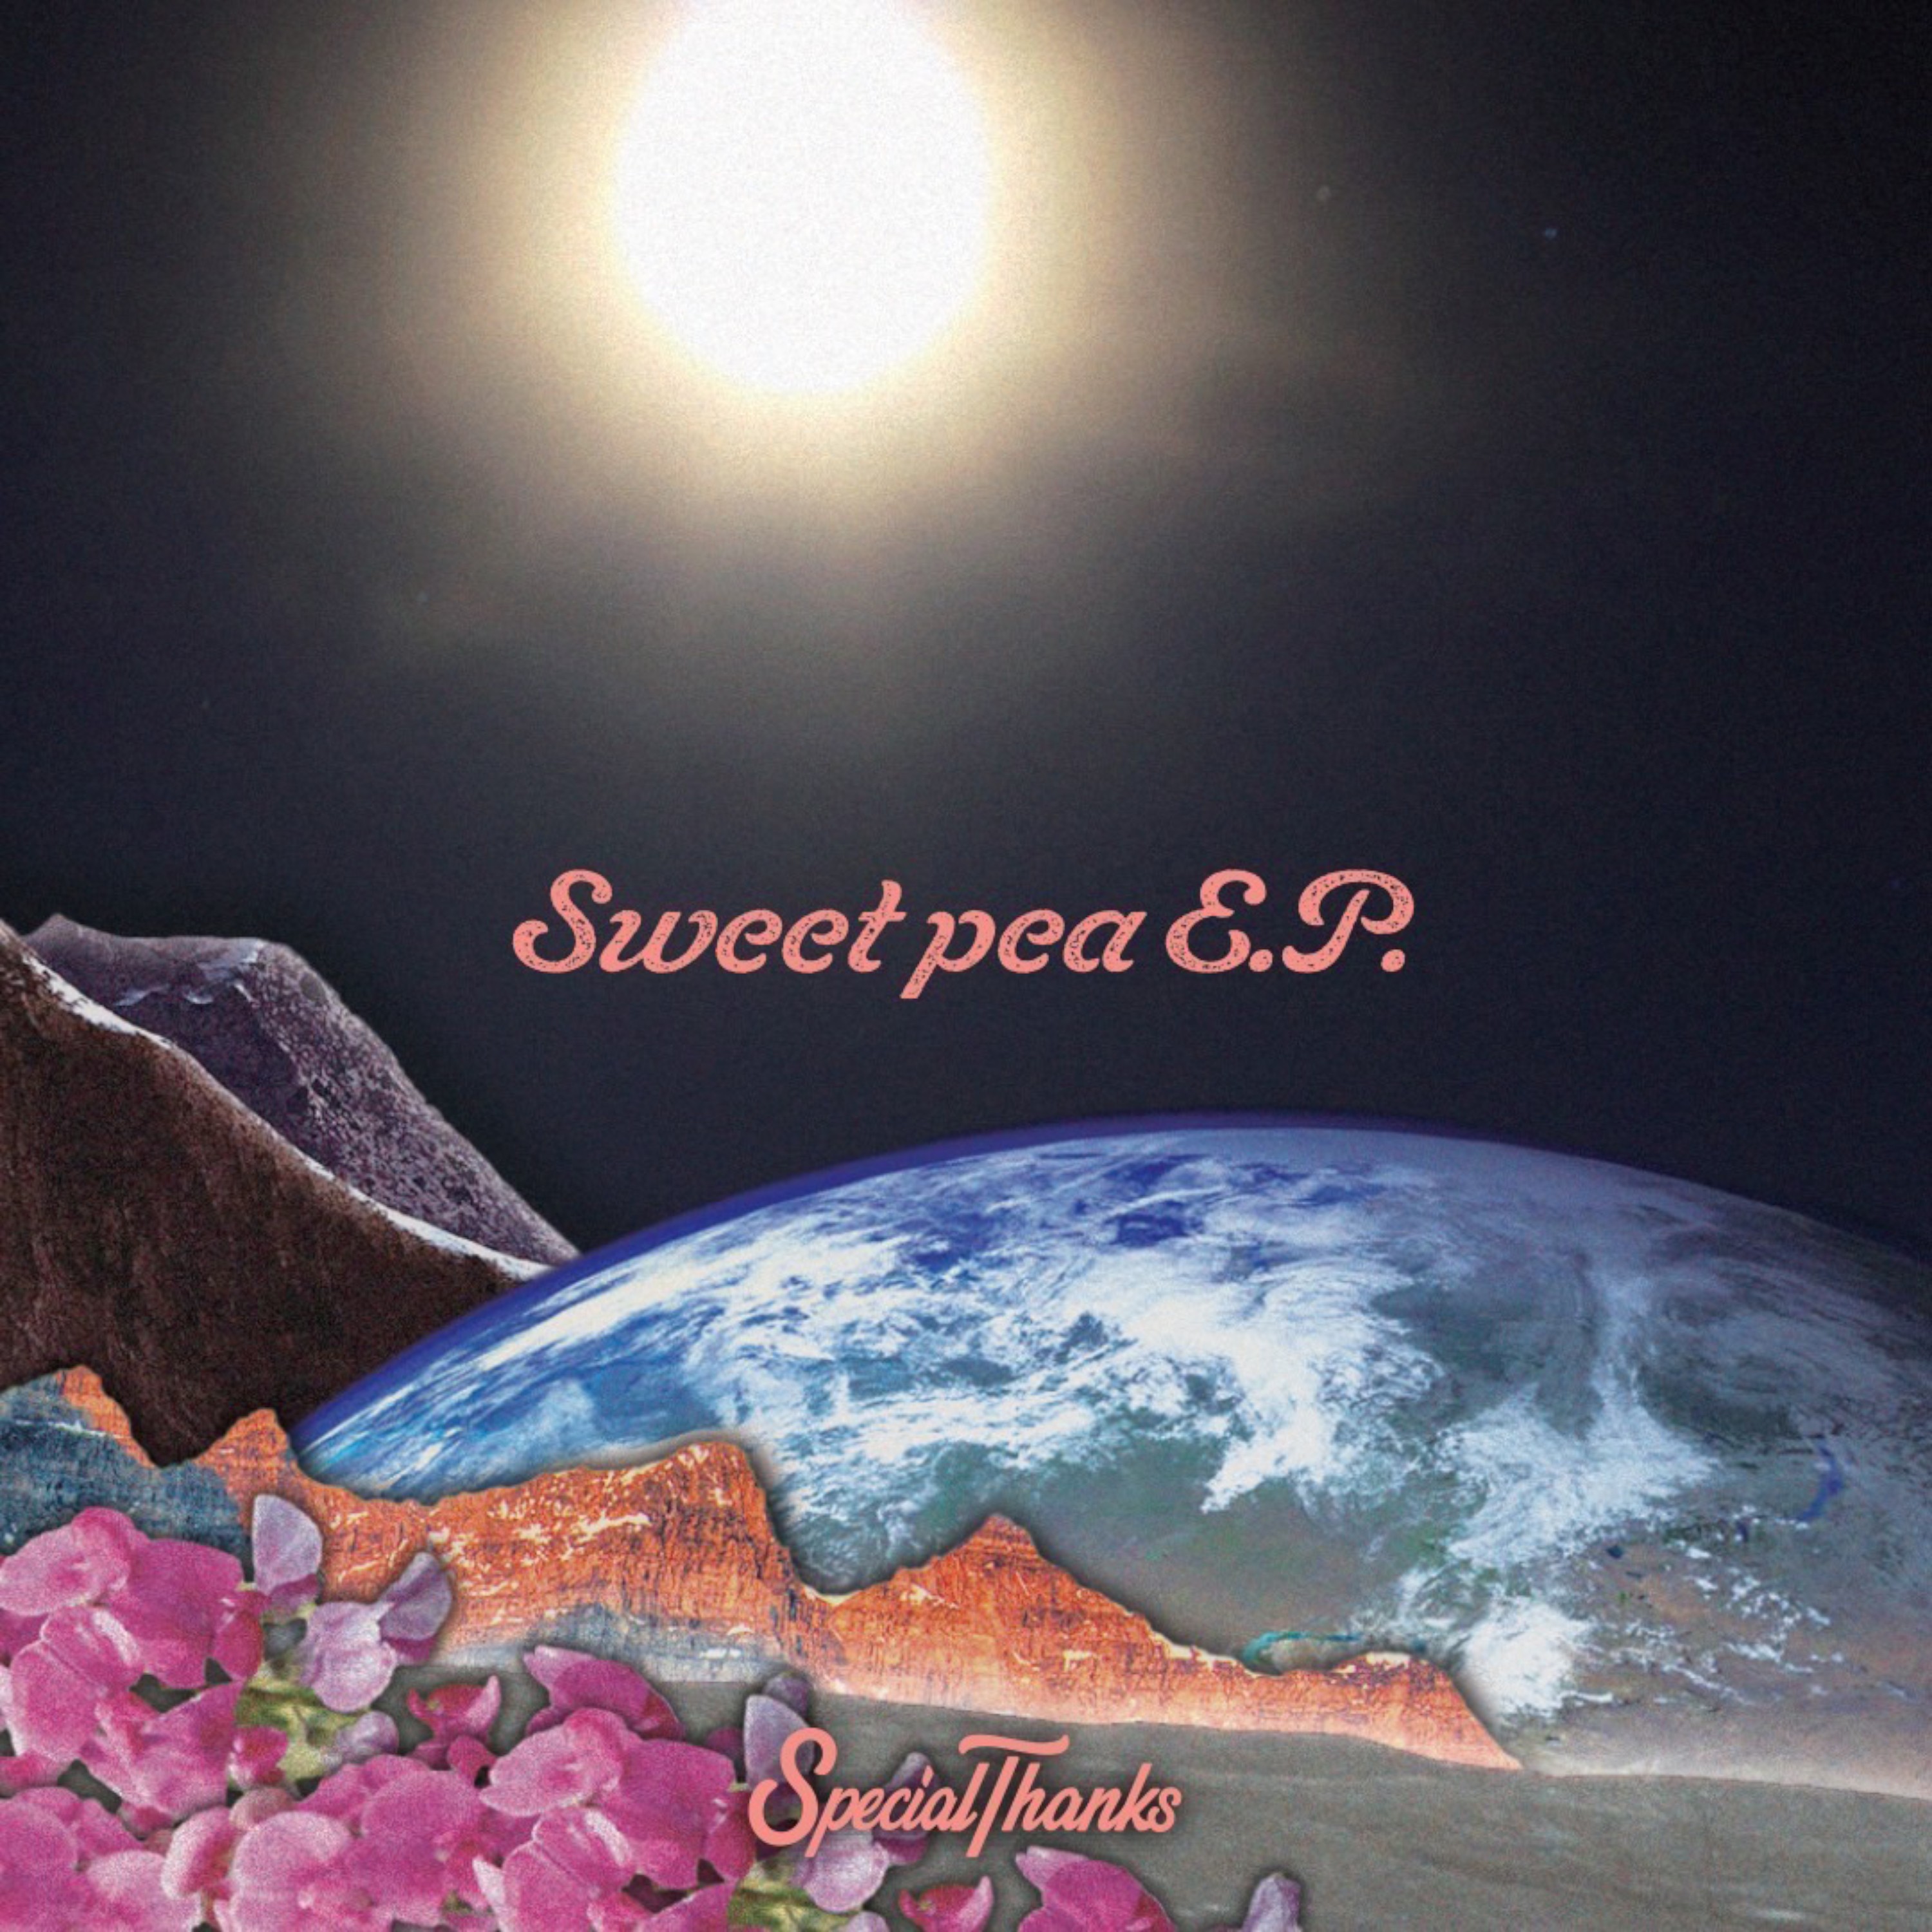 Sweet pea E.P.